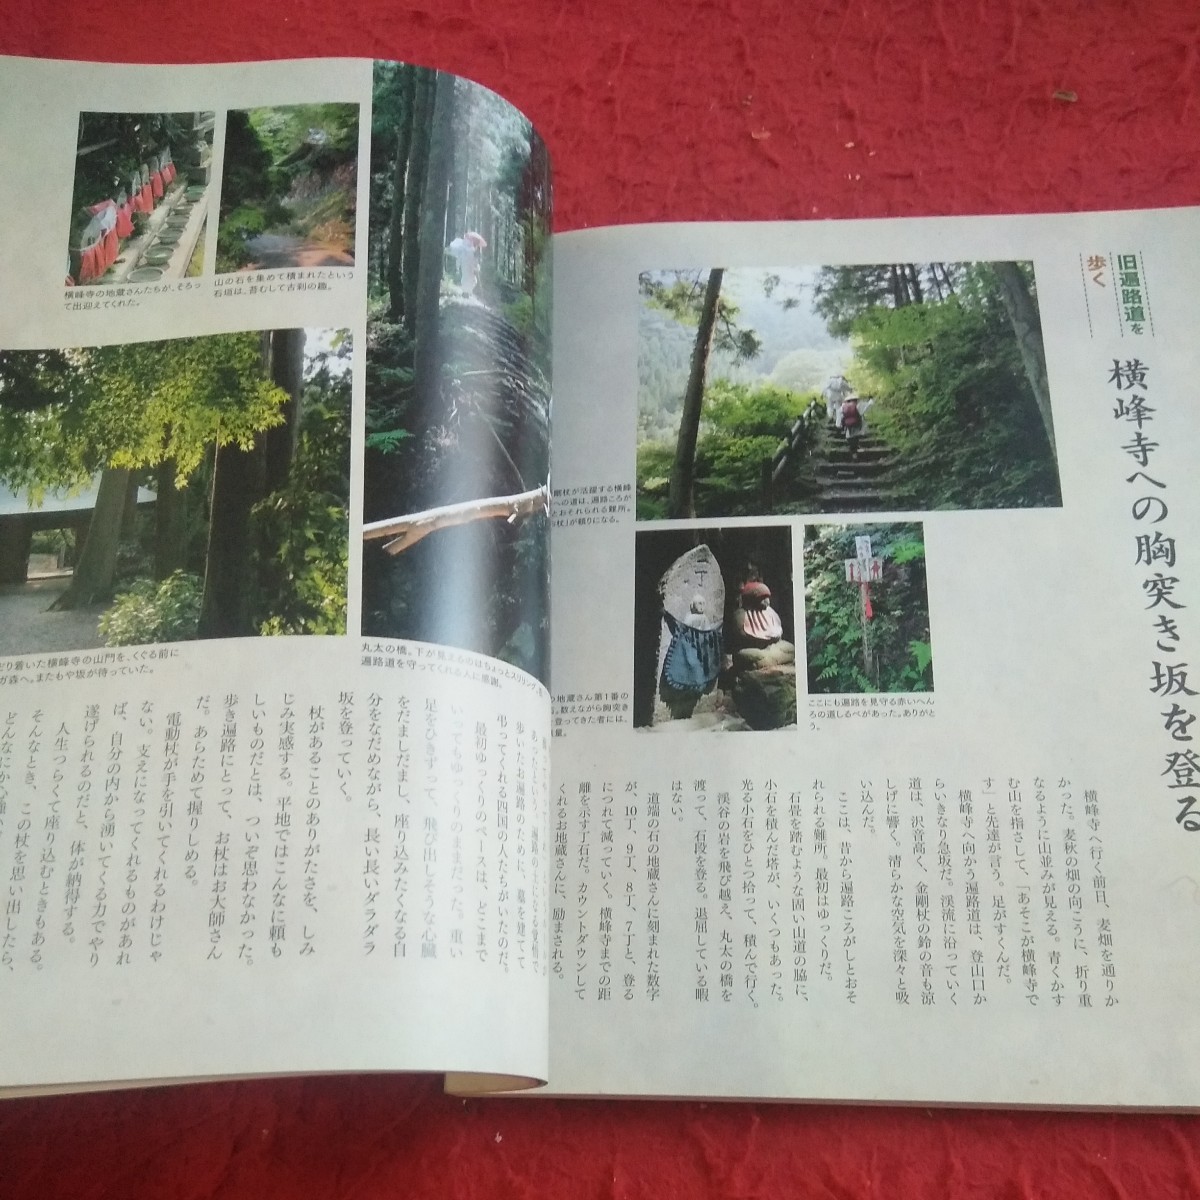 d-664 NHK 趣味悠々 2006年発行 四国八十八ヶ所はじめてのお遍路 人生に一区切り 歩きながら自分を見つめなおす旅※8_画像6